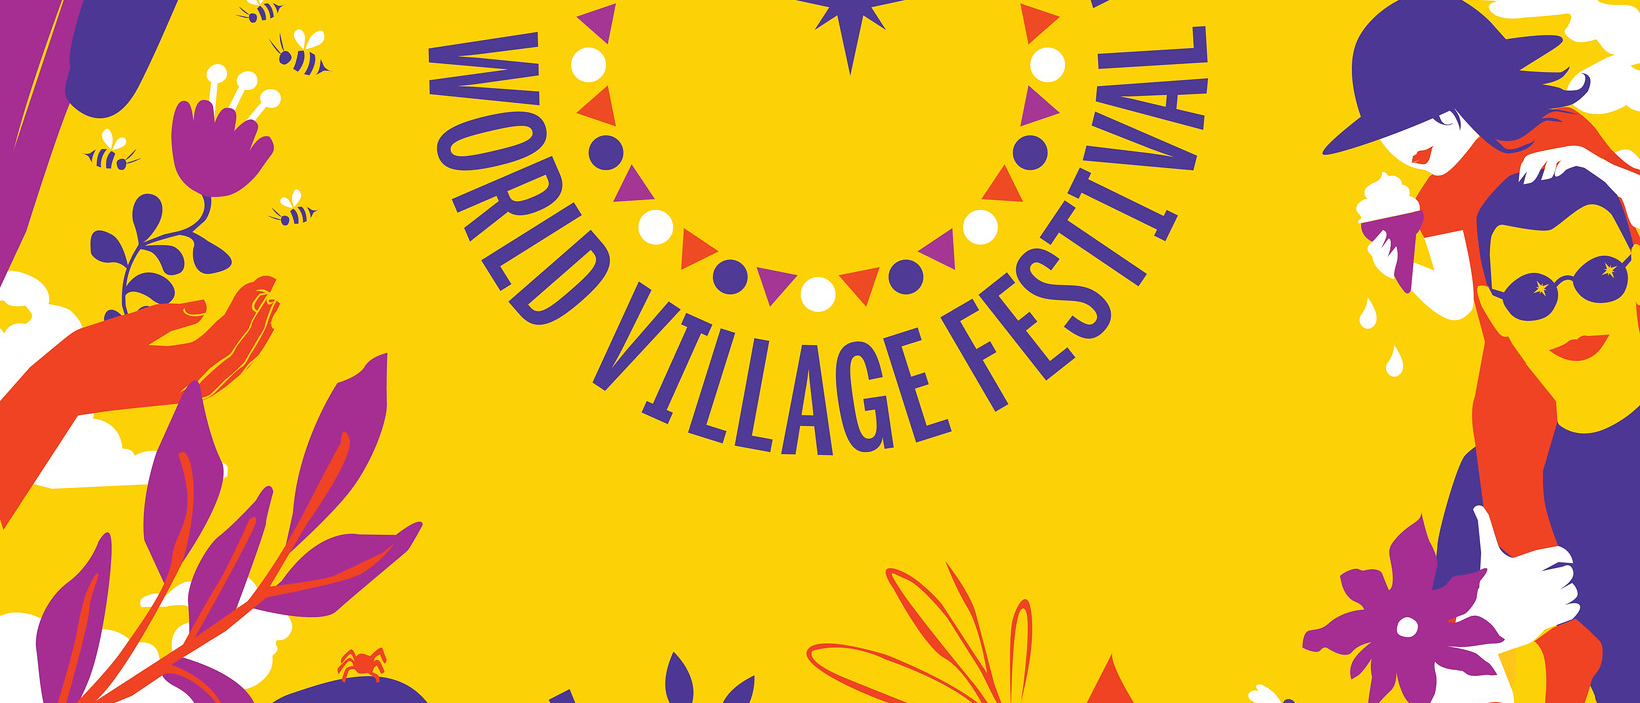 Texten Worl village festival på en färggrann botten.